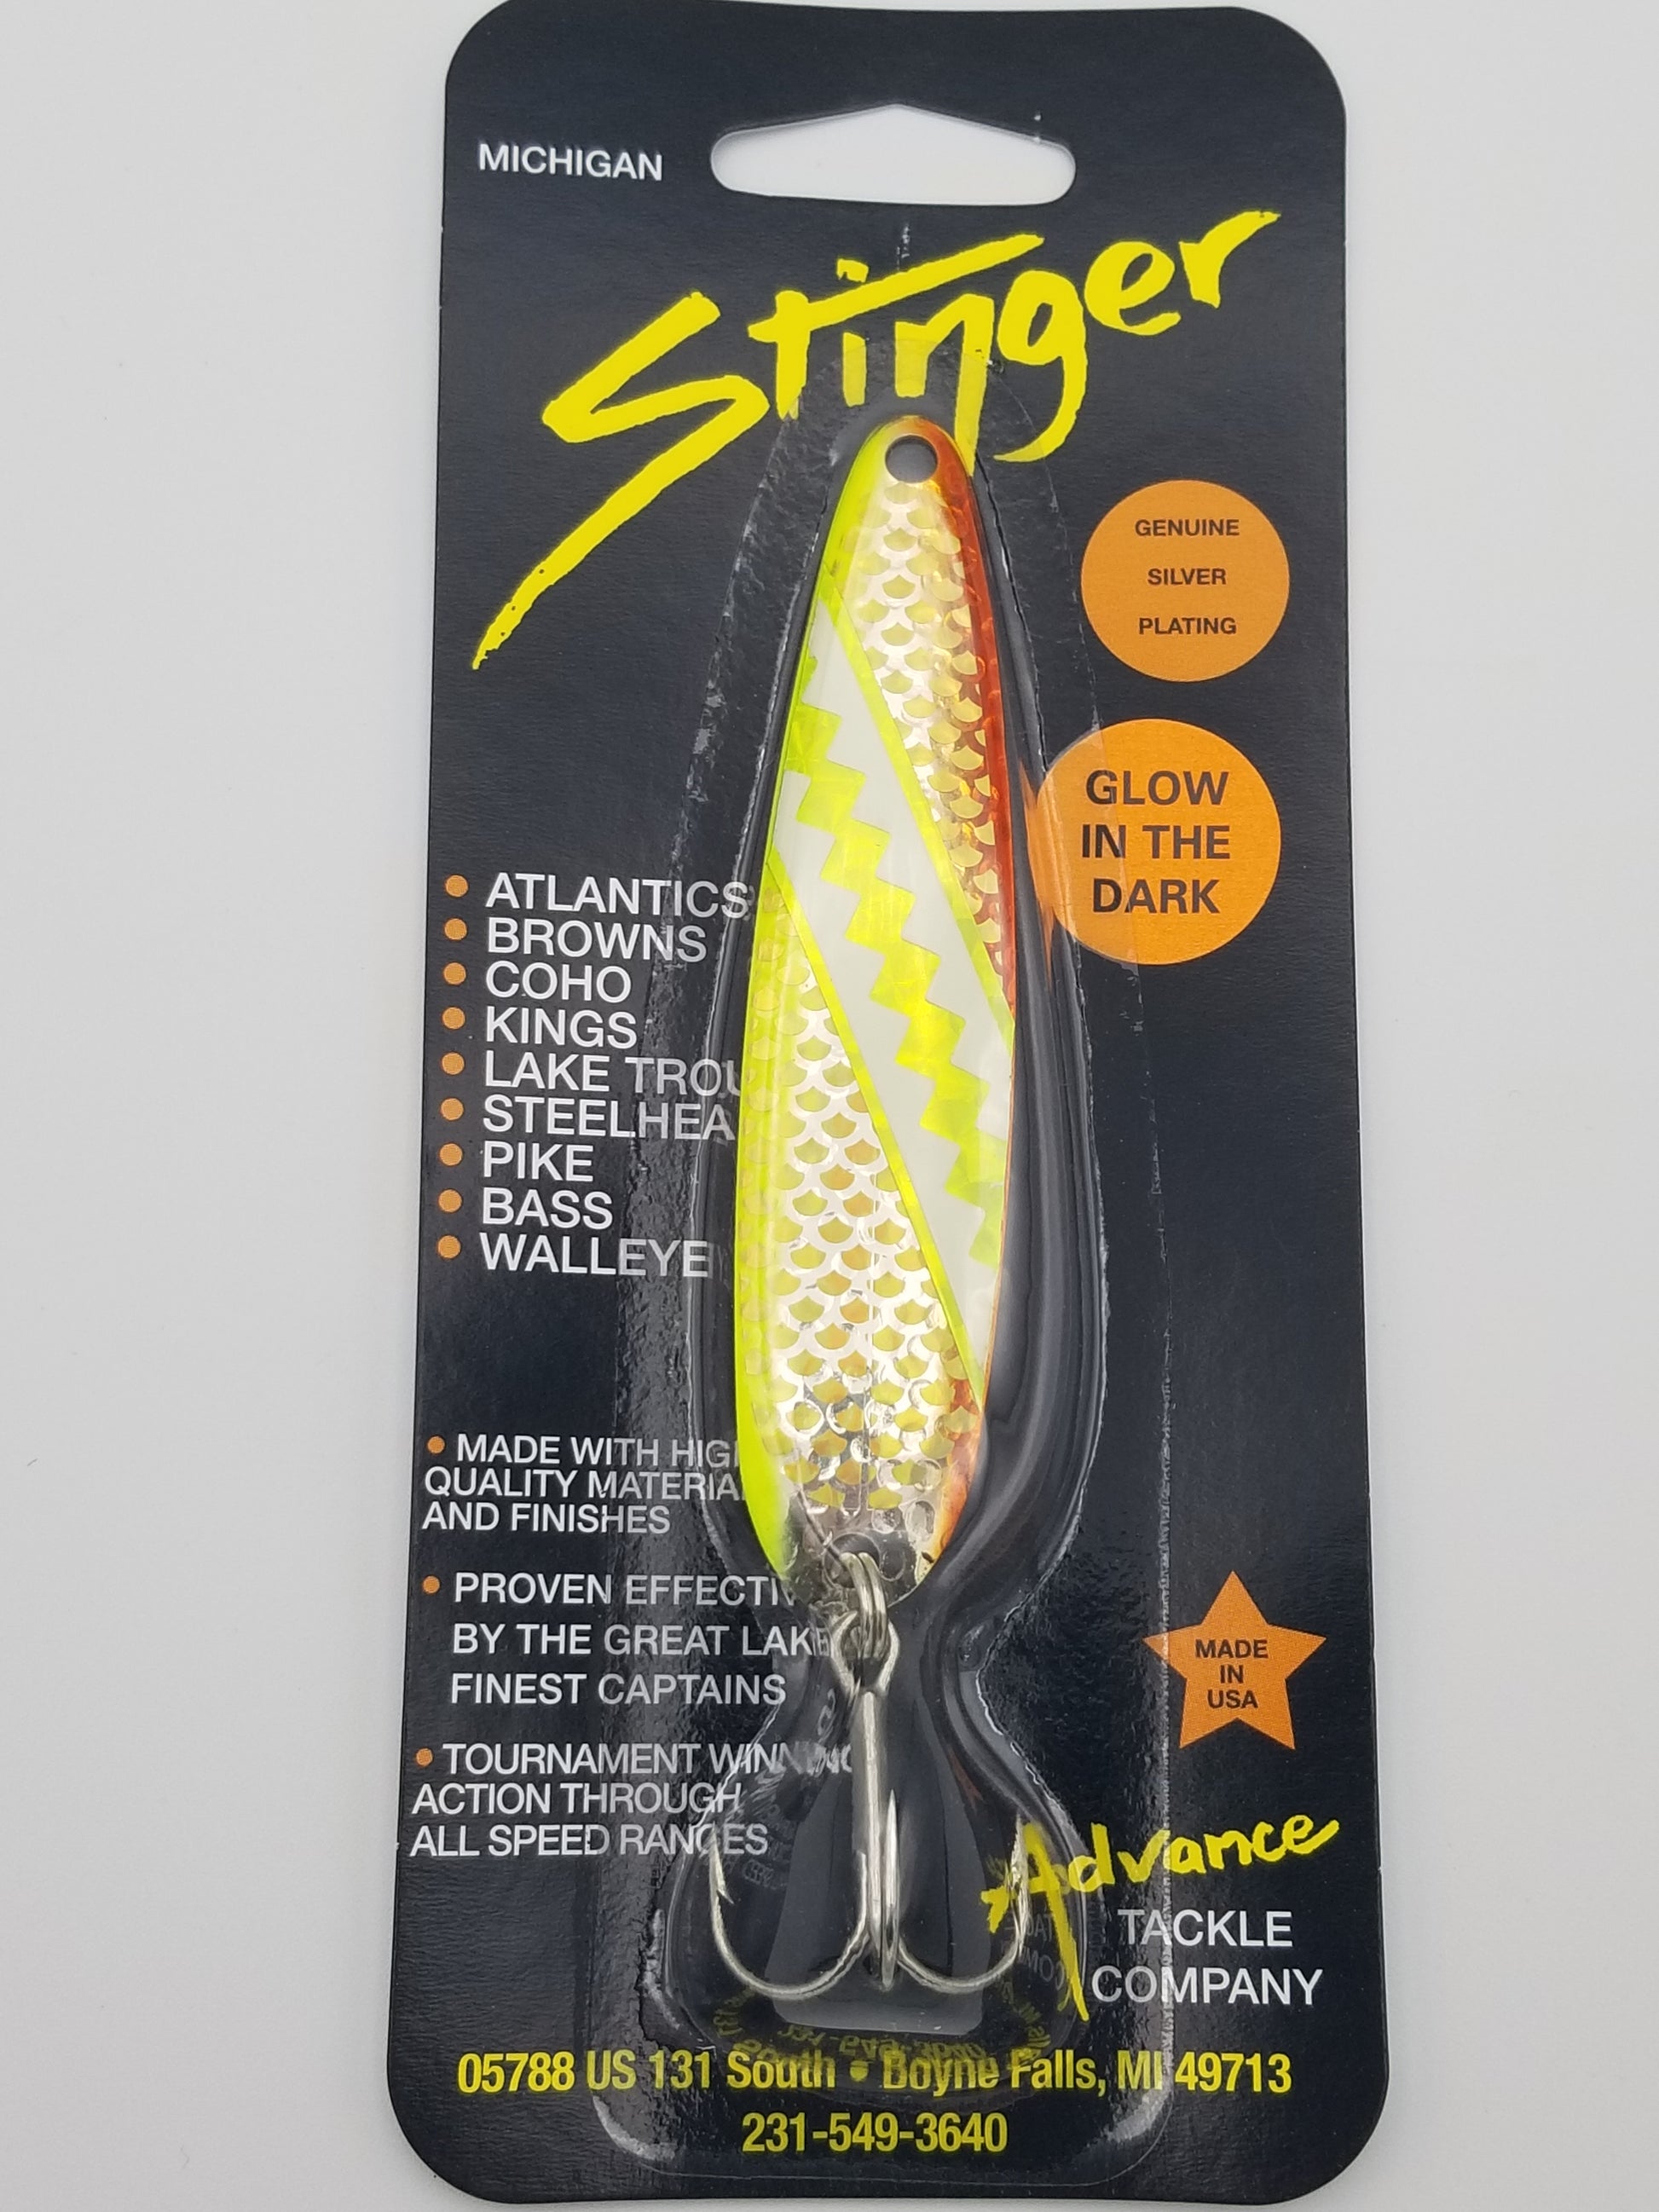 Michigan Stinger Standard Spoon: Wonderbread